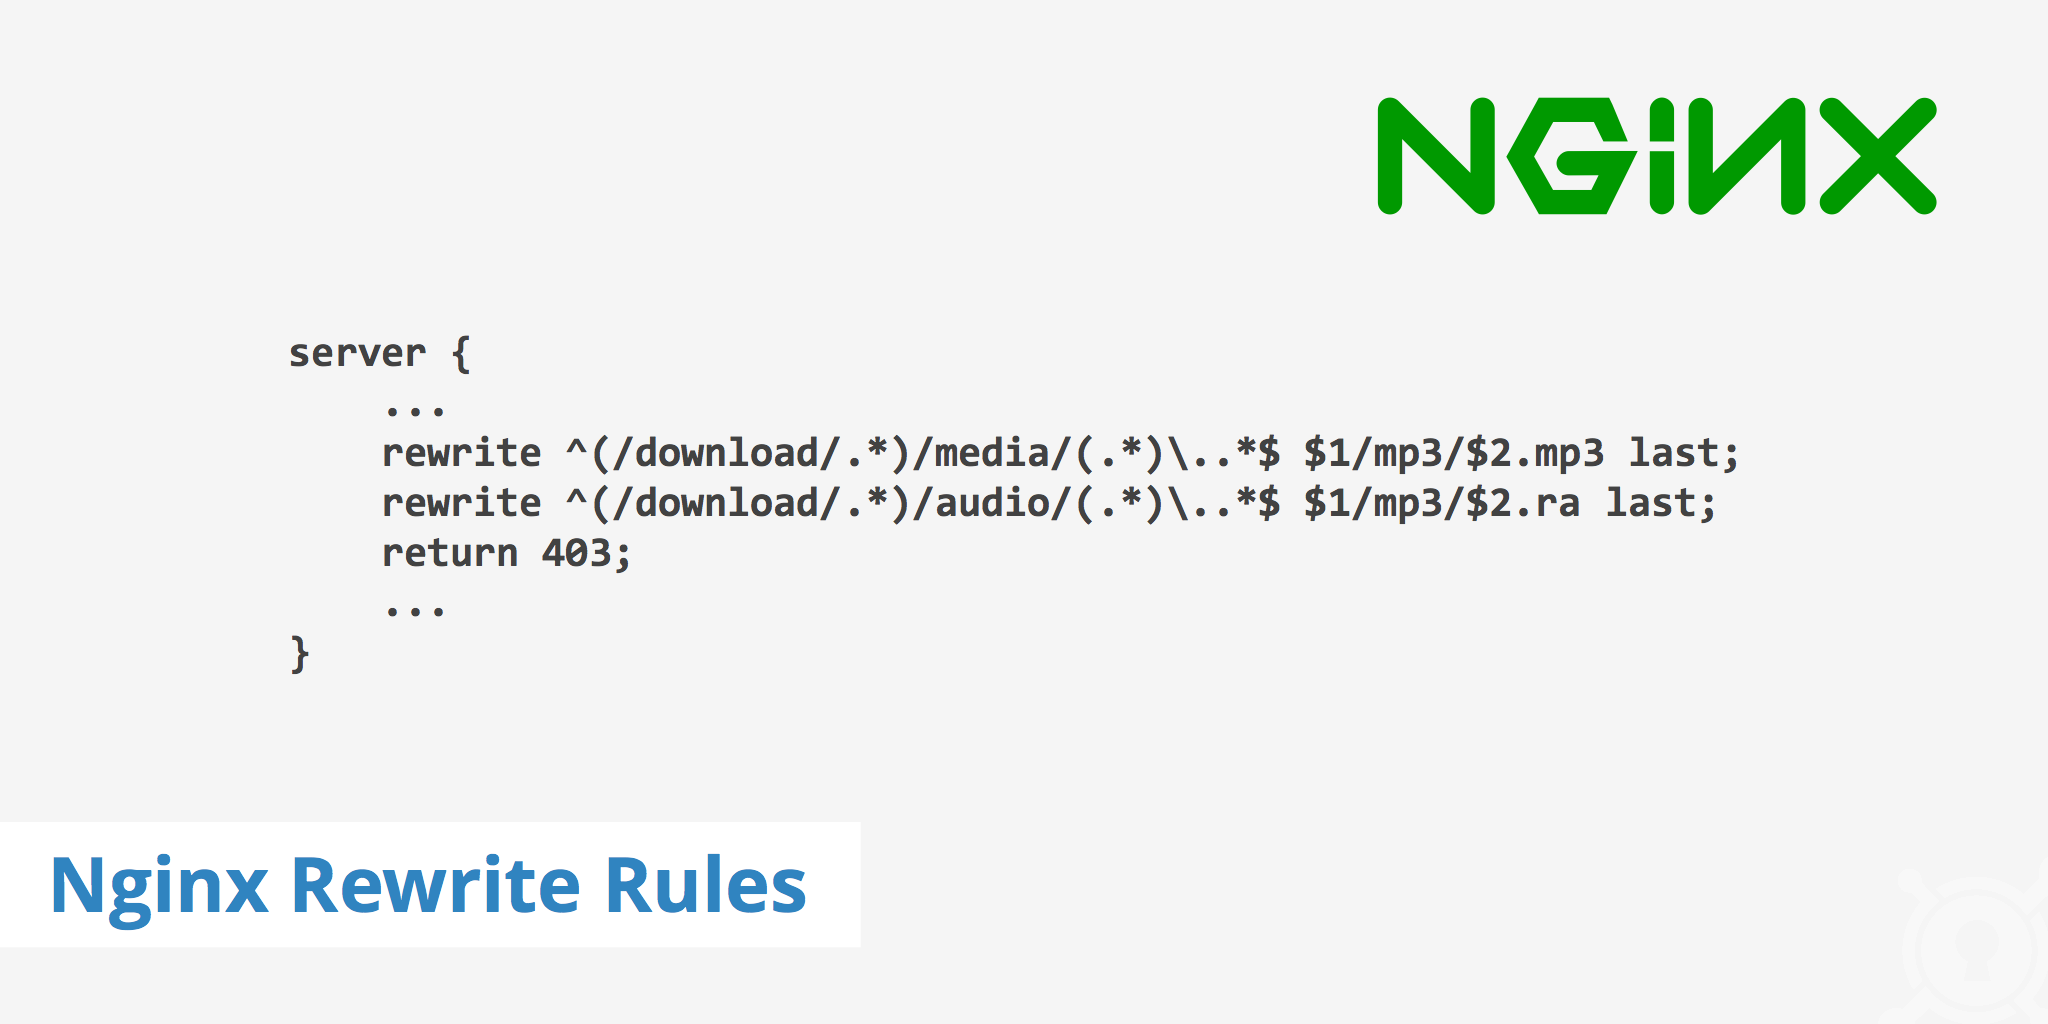 Задача - настроить rewrite на NGINX, и включить запись логов для отладки Rewrite rewrite в NGINX реализован с помощью модуля ngx_http_rewrite_module Пример правил, используемый у нас: location ~ ^$  rewrite ^*$ cloudlibraryui redirect;  if $request_uri ~